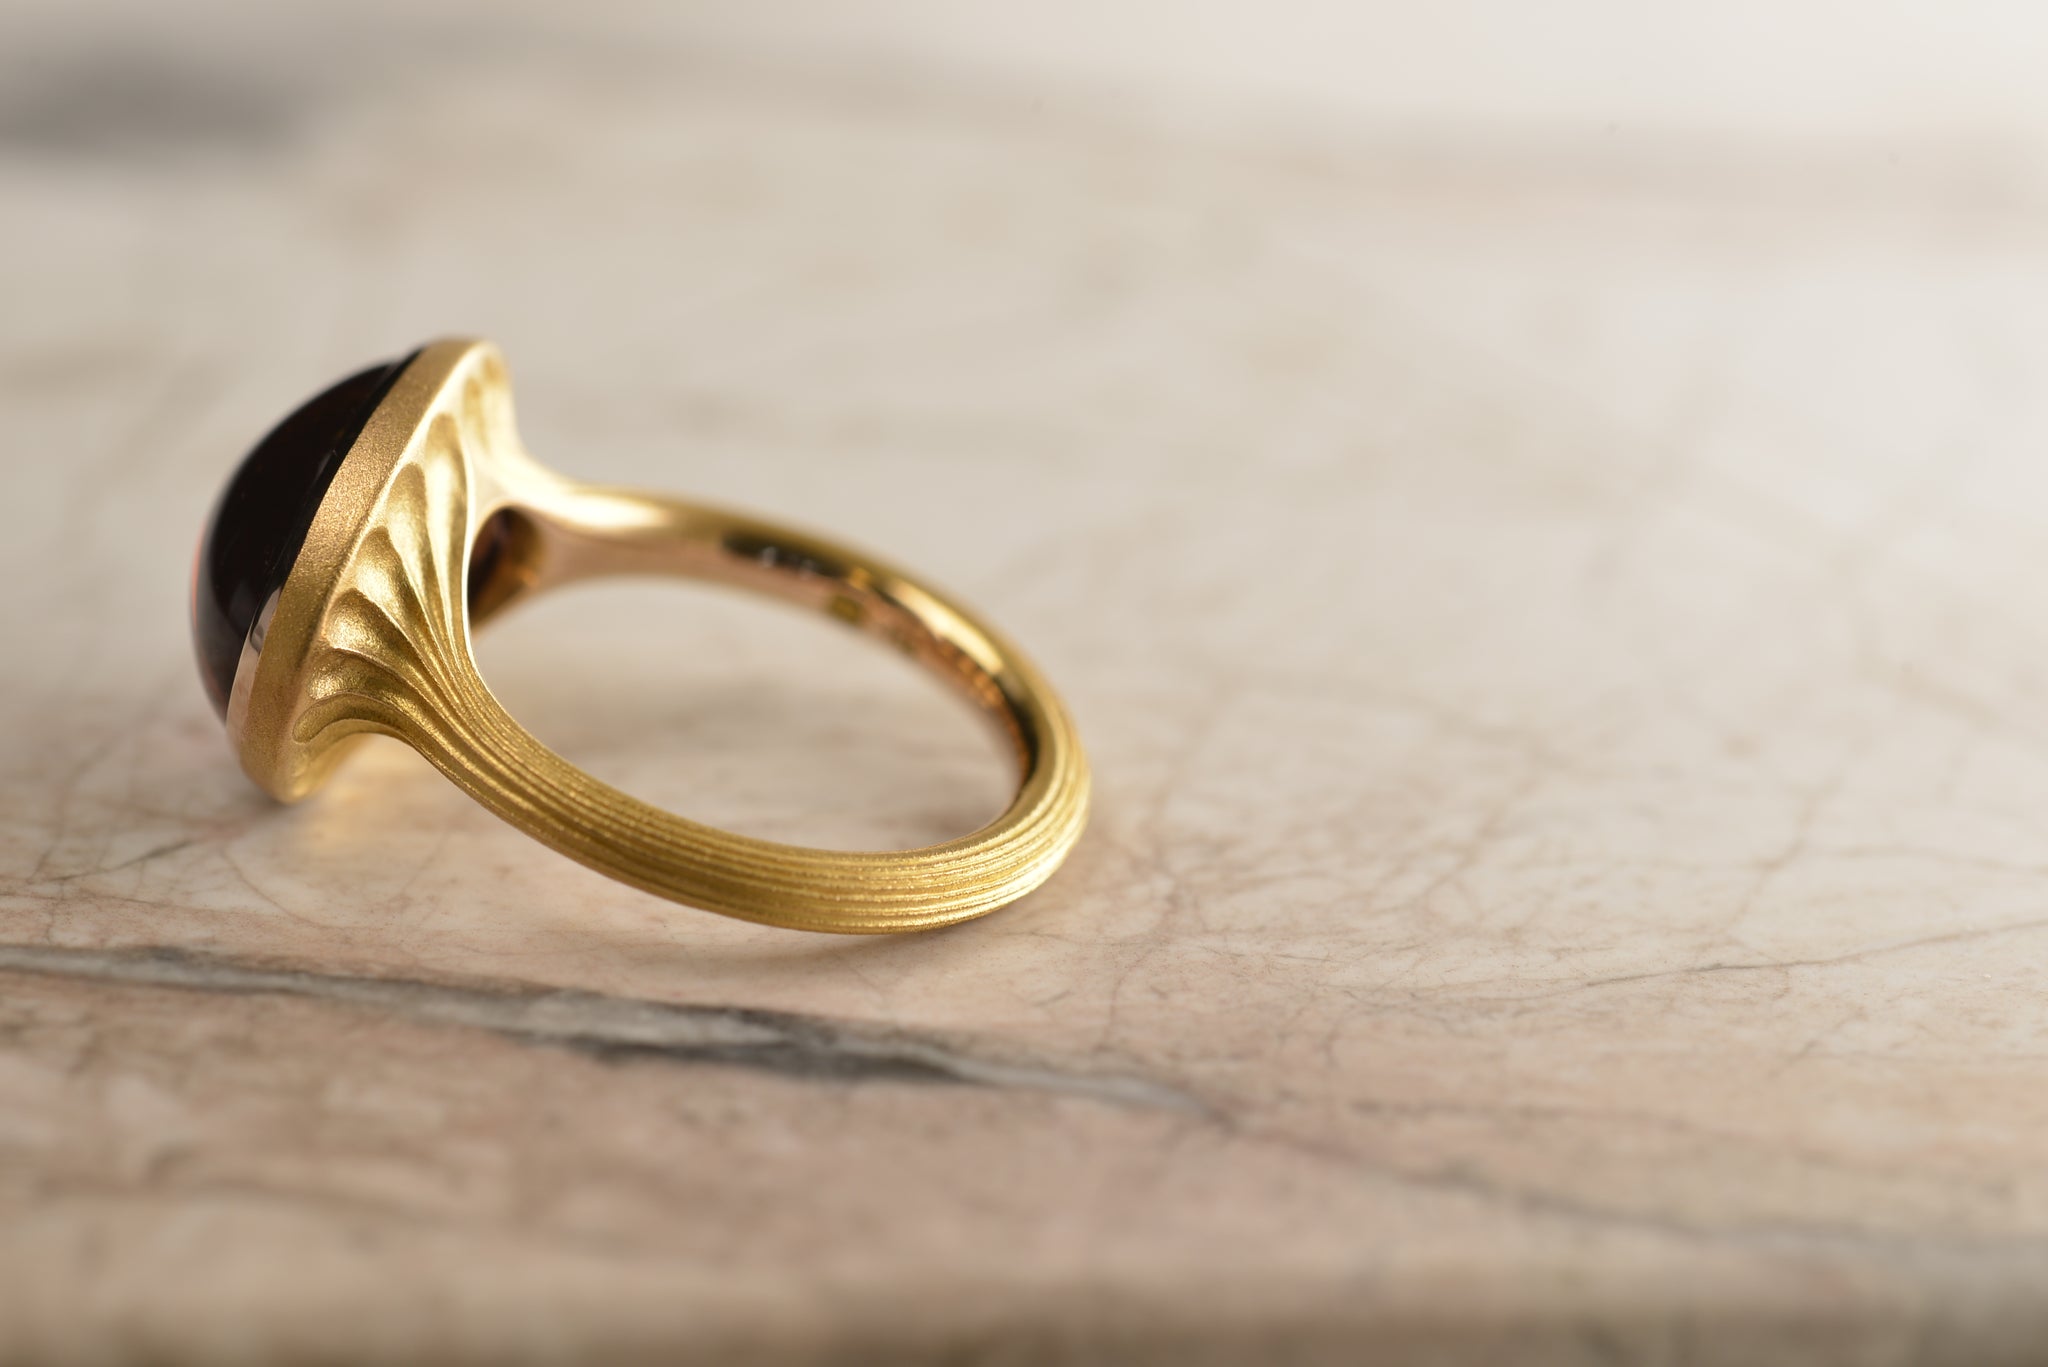 ''Acela 'Sunset Tourmaline Ring